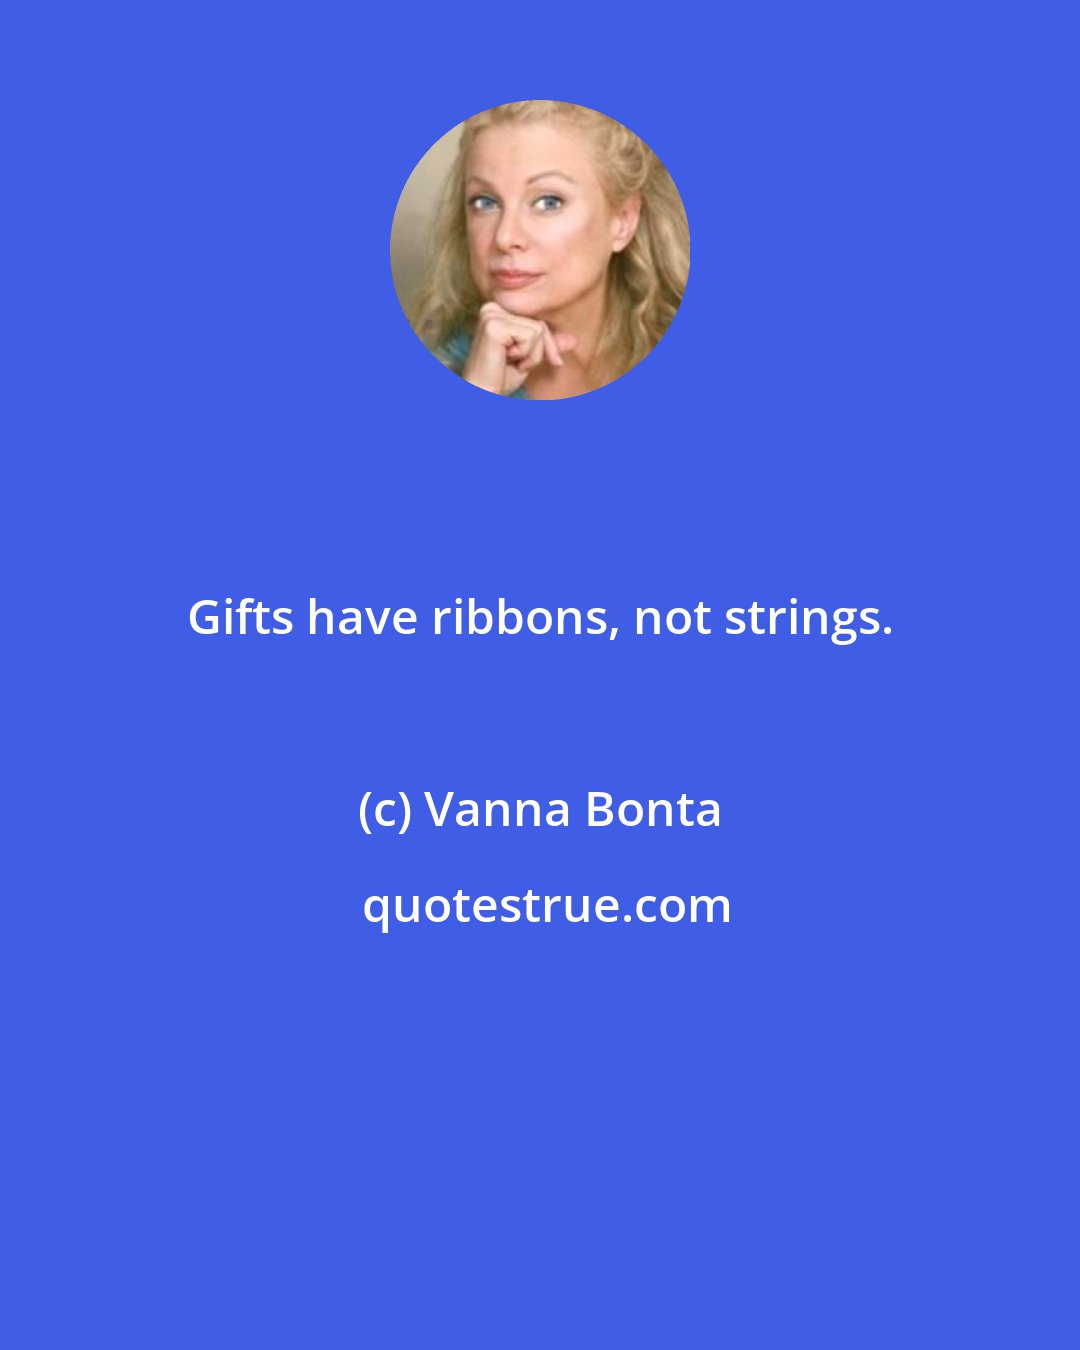 Vanna Bonta: Gifts have ribbons, not strings.